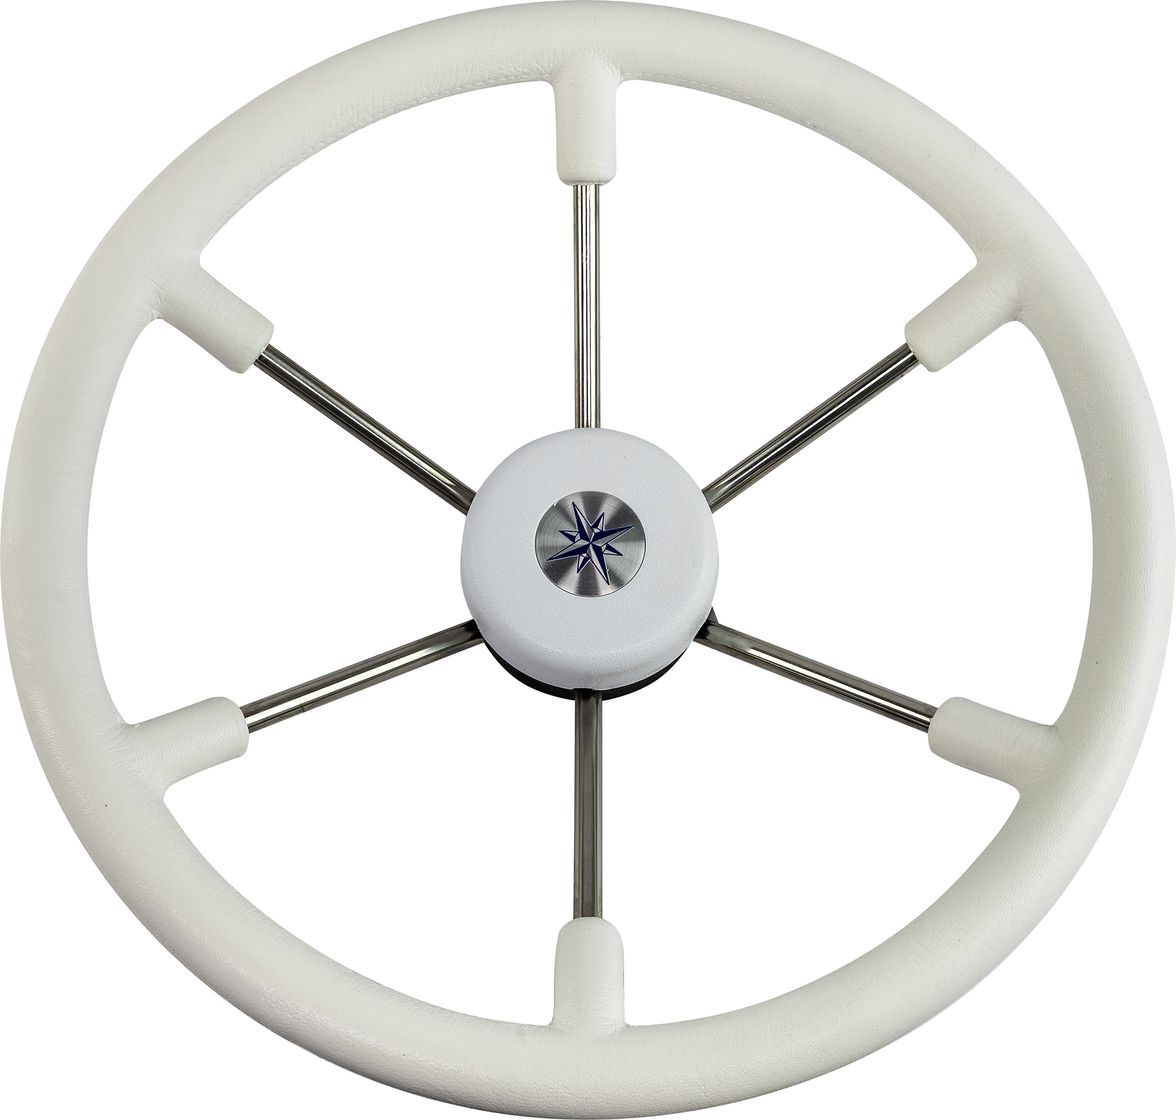 Рулевое колесо LEADER TANEGUM белый обод серебряные спицы д. 400 мм VN7400-08 рулевое колесо leader tanegum белый обод серебряные спицы д 360 мм vn7360 08